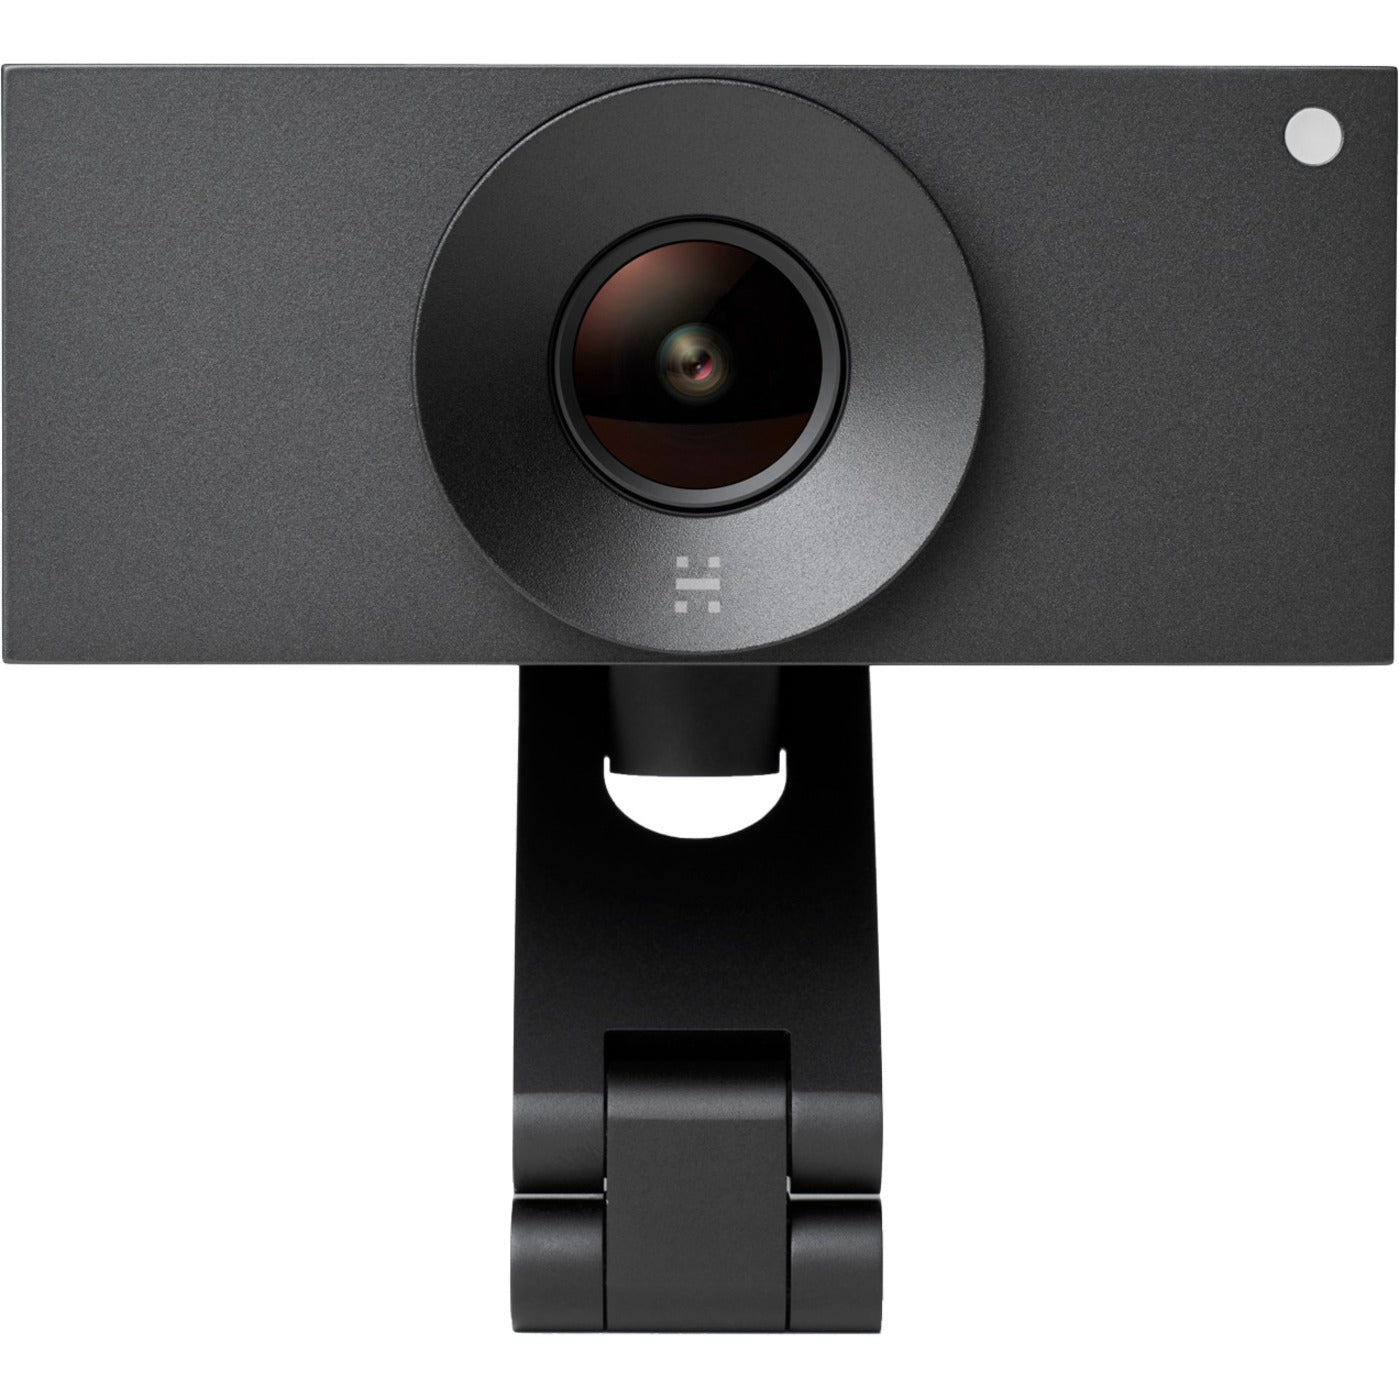 Huddly 7090043790672 L1 Video Conferencing Camera, 20.3 Megapixel, 30 fps, Matte Black, USB 3.0